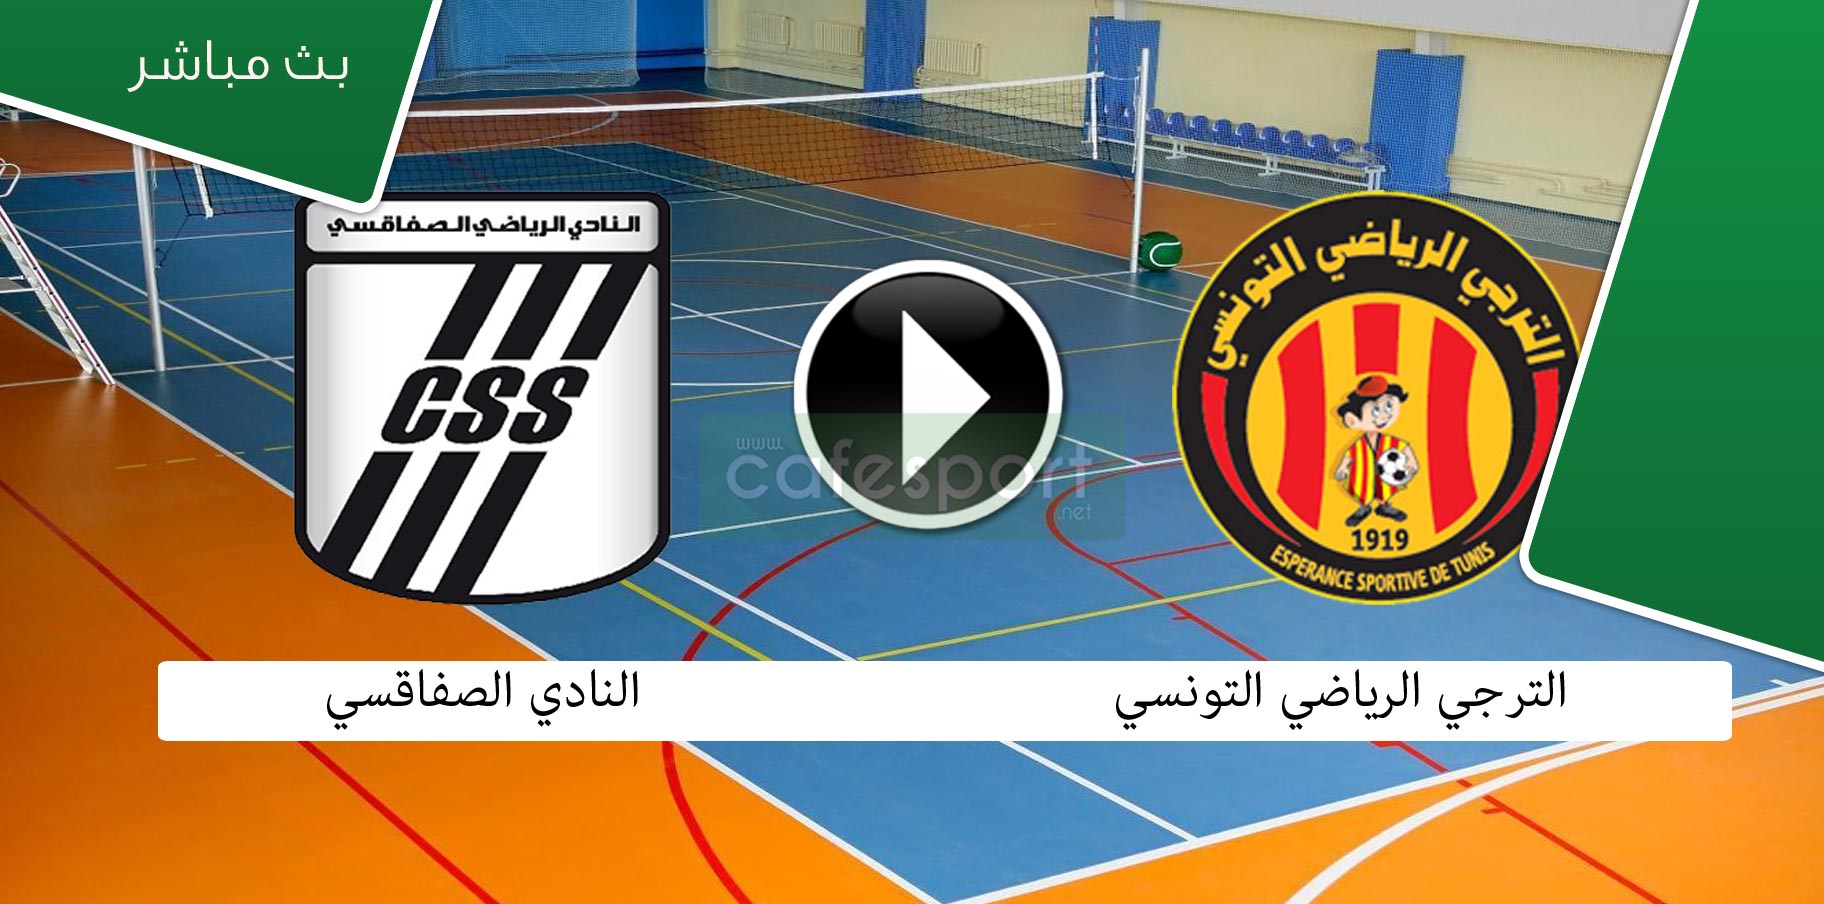 بث مباشر لمباراة الترجي الرياضي التونسي- النادي الصفاقسي